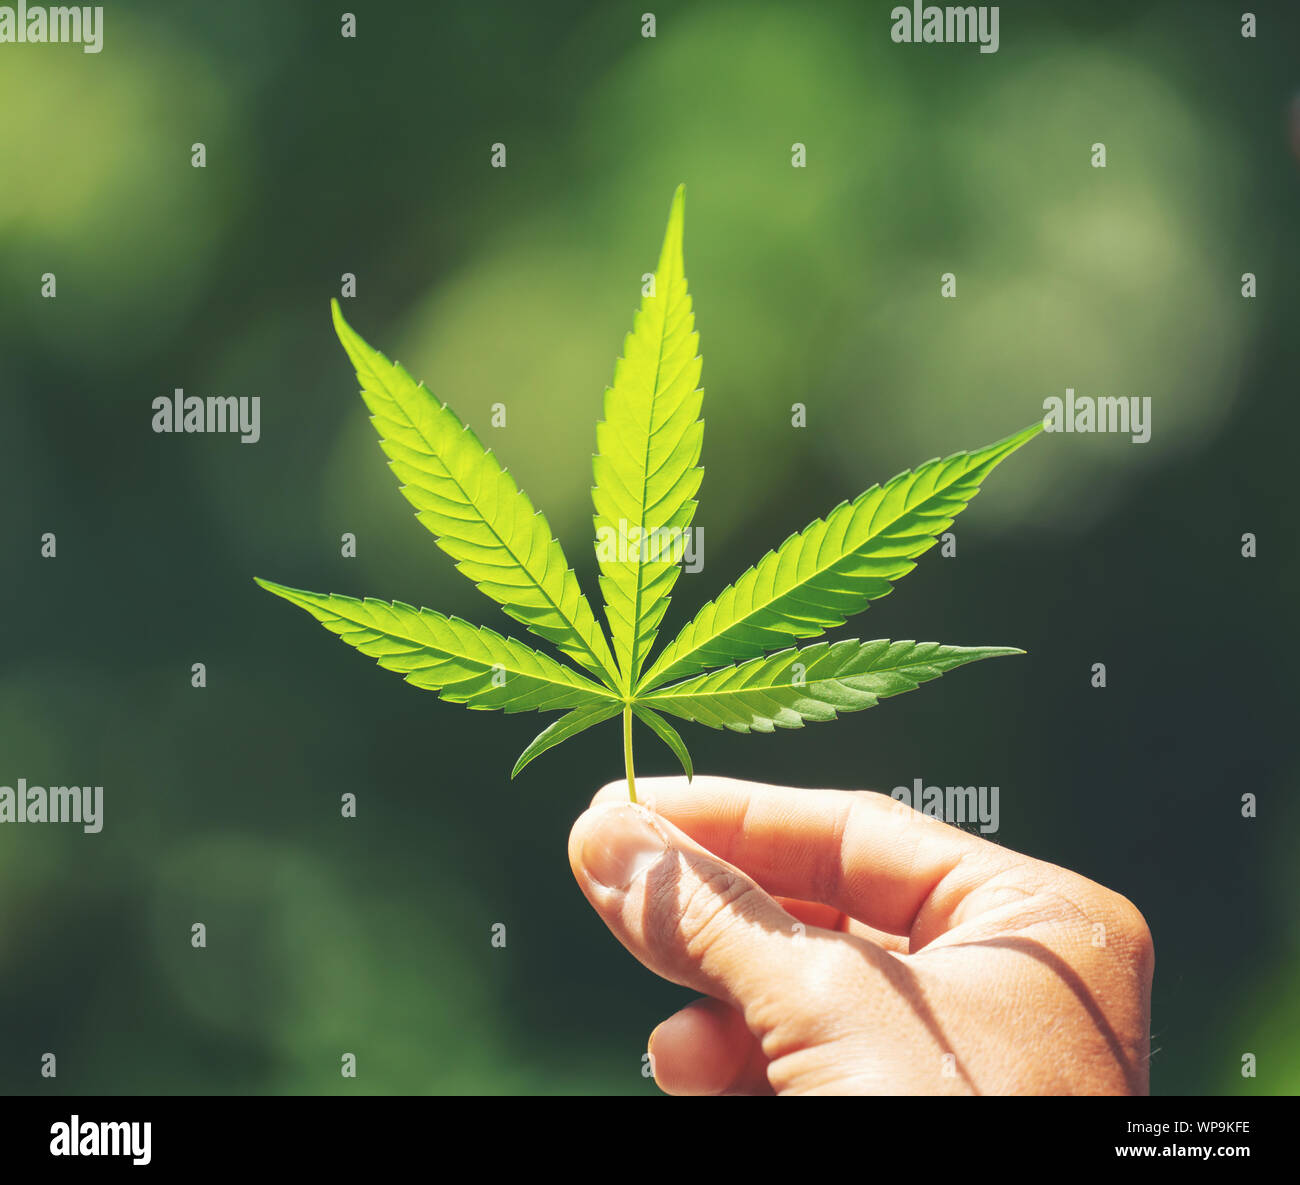 Hand holding fresh marijuana leaf nature background Stock Photo